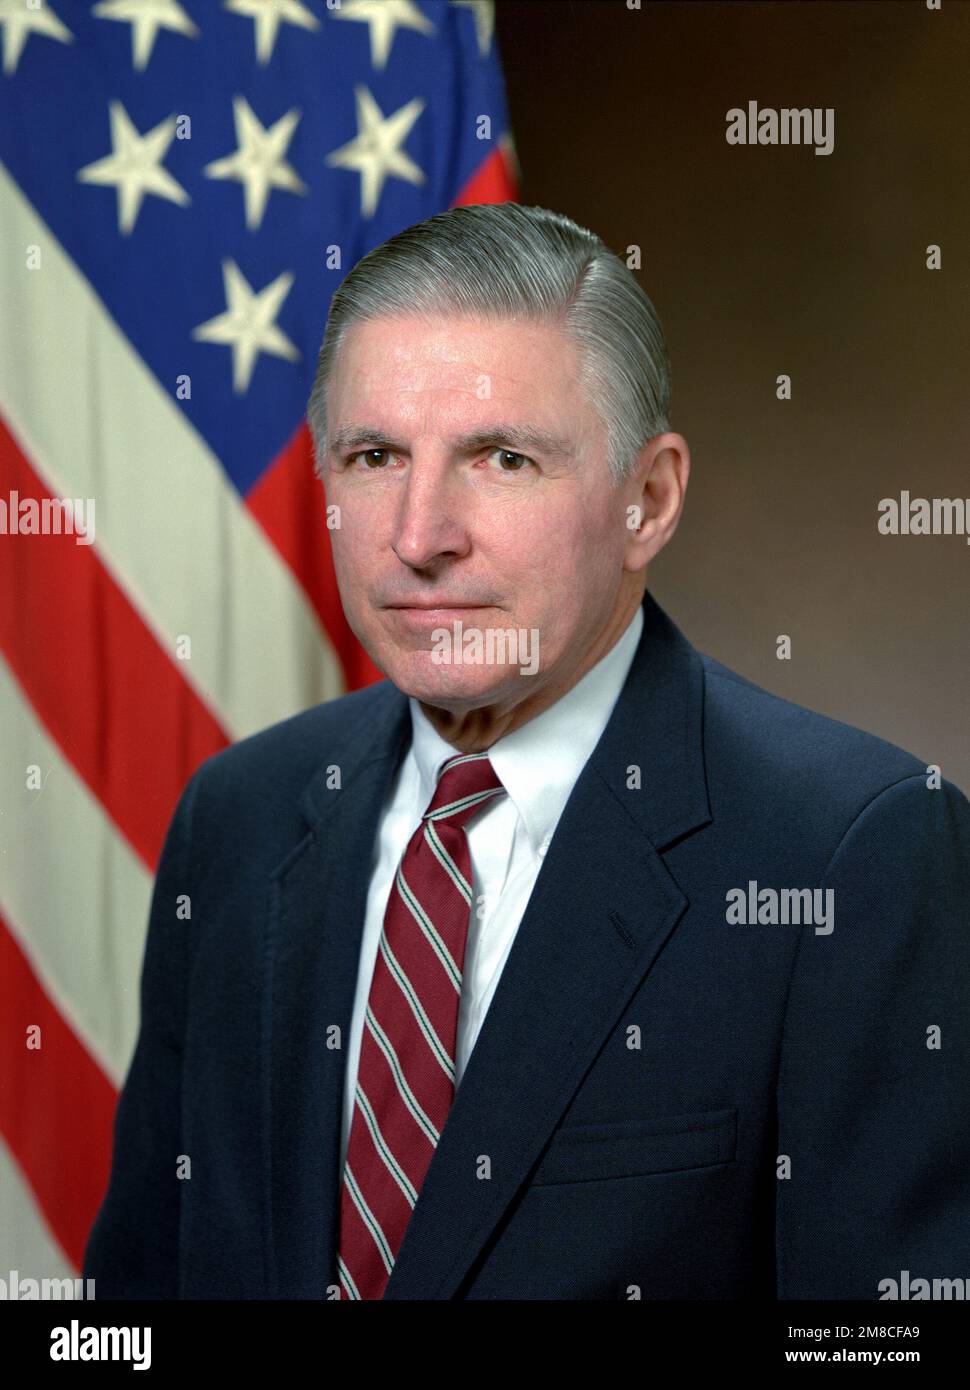 Sig. George Dausman, assistente segretario per la ricerca. Base: Pentagono  Stato: District of Columbia (DC) Nazione: Stati Uniti d'America (USA Foto  stock - Alamy